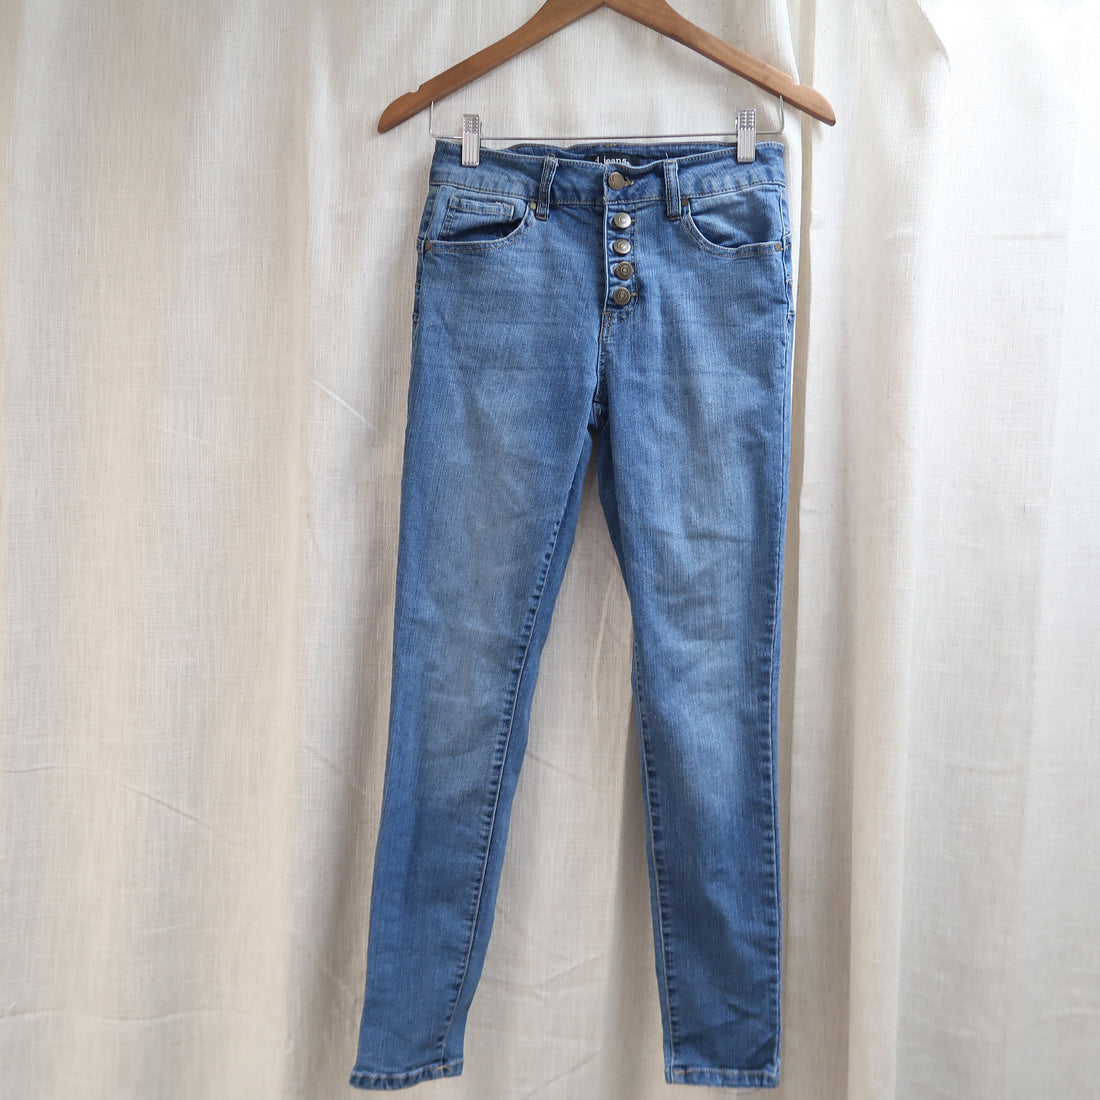 d. jeans - Pants (Women&